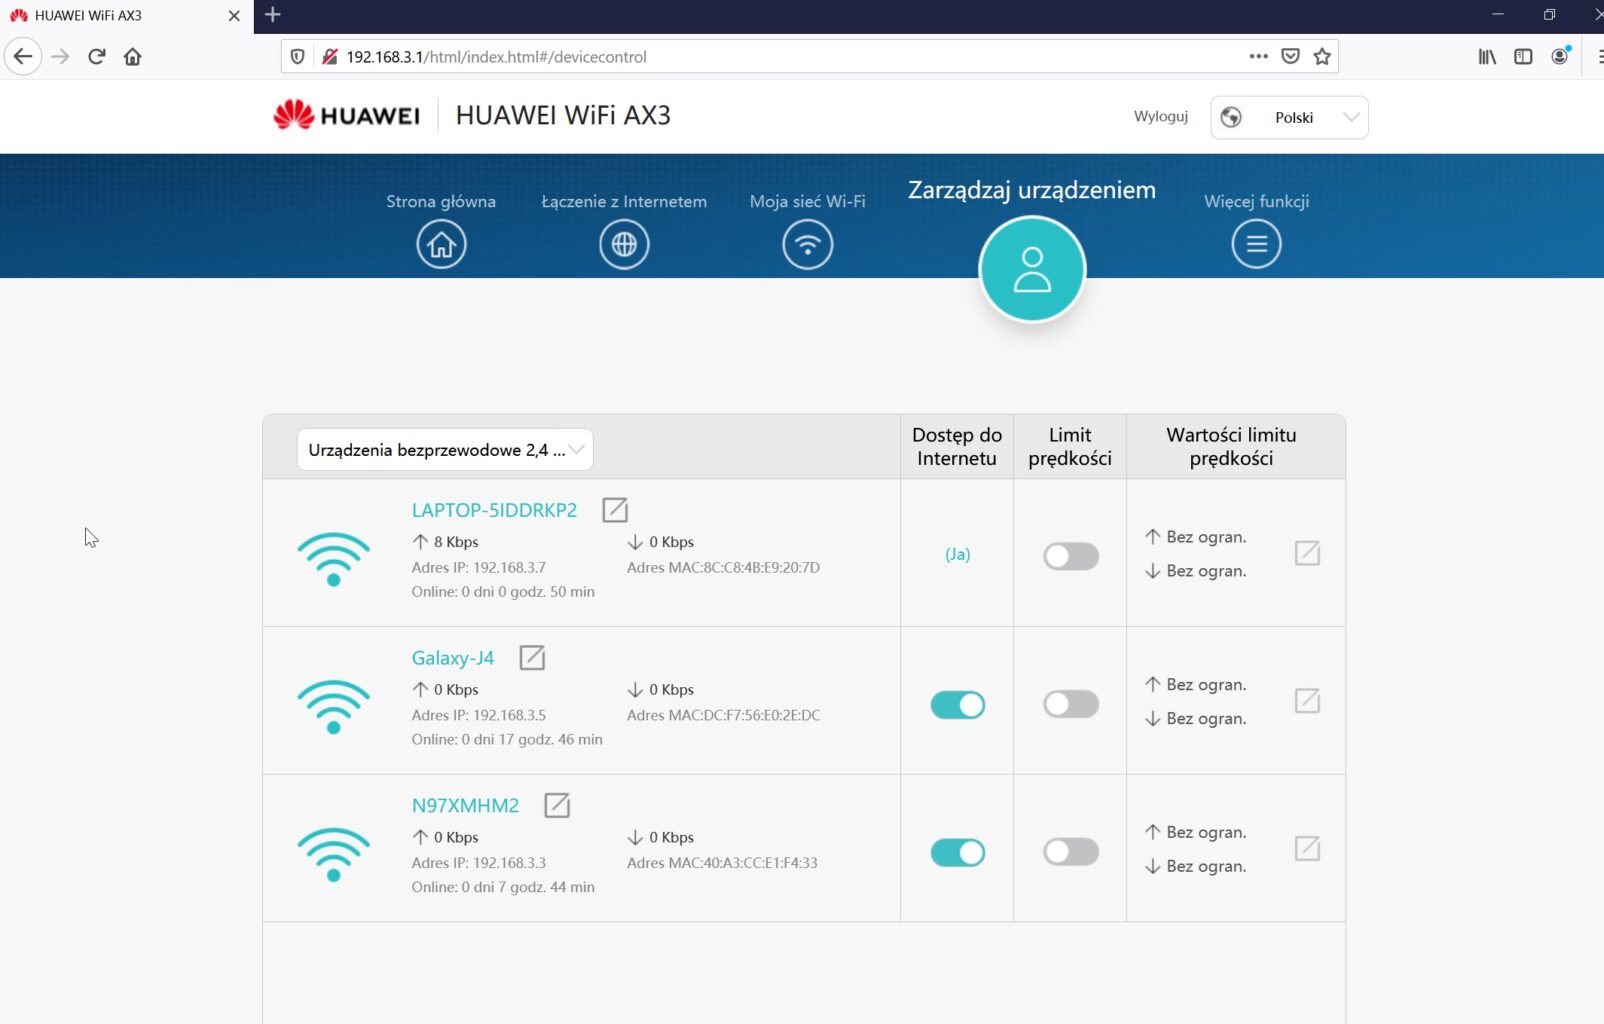 Huawei WiFi AX3 Quad Core - przeglądarka zarządzaj urządzeniem